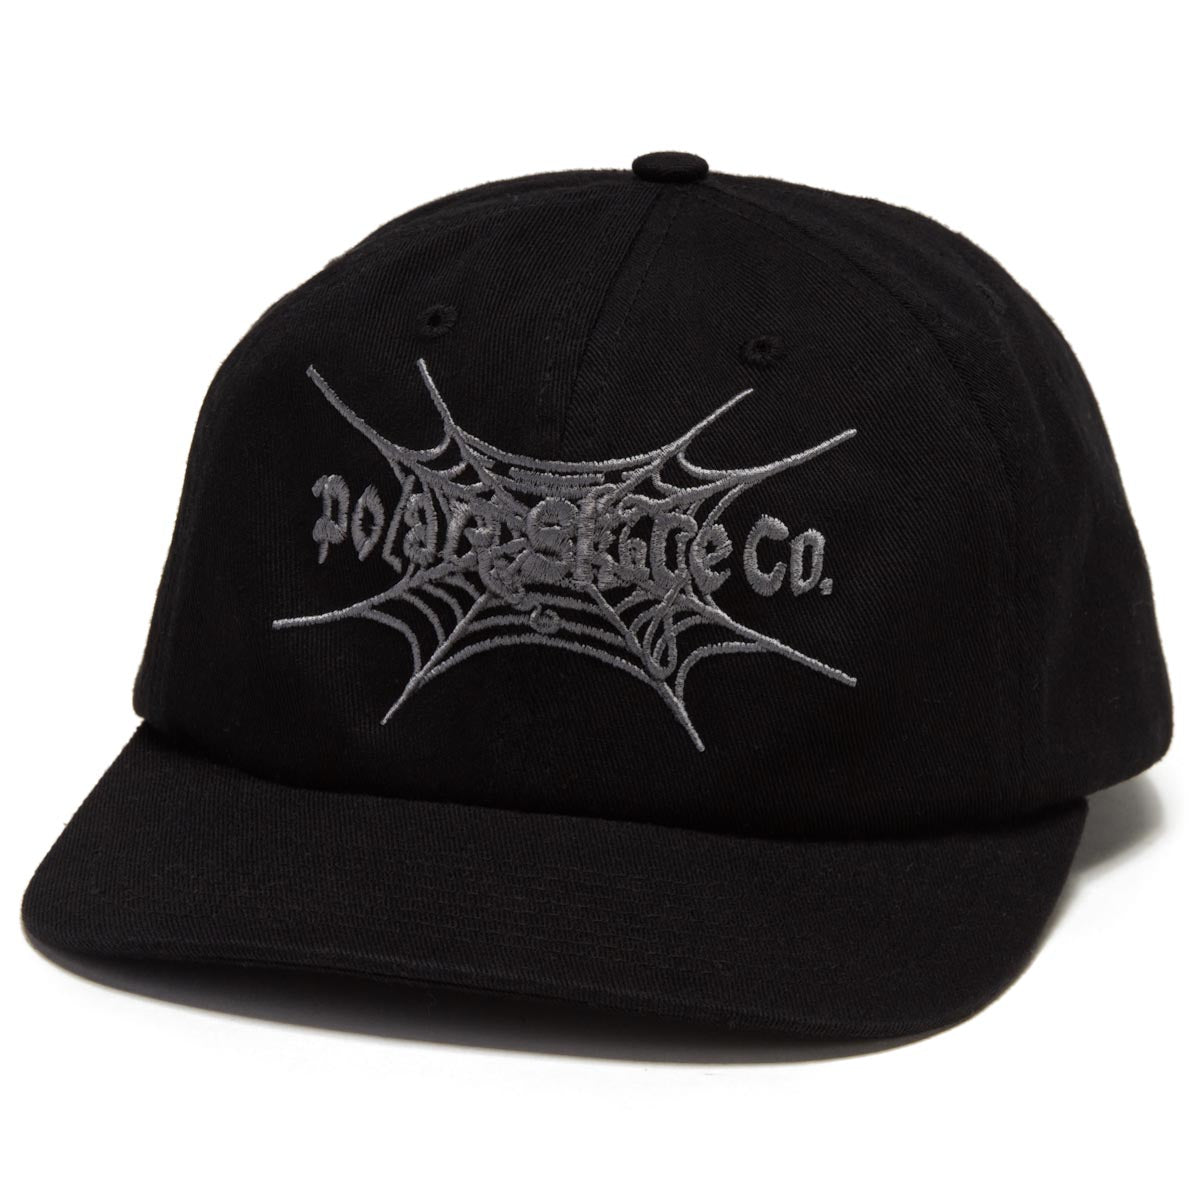 Polar Michael Spiderweb Hat - Black image 1